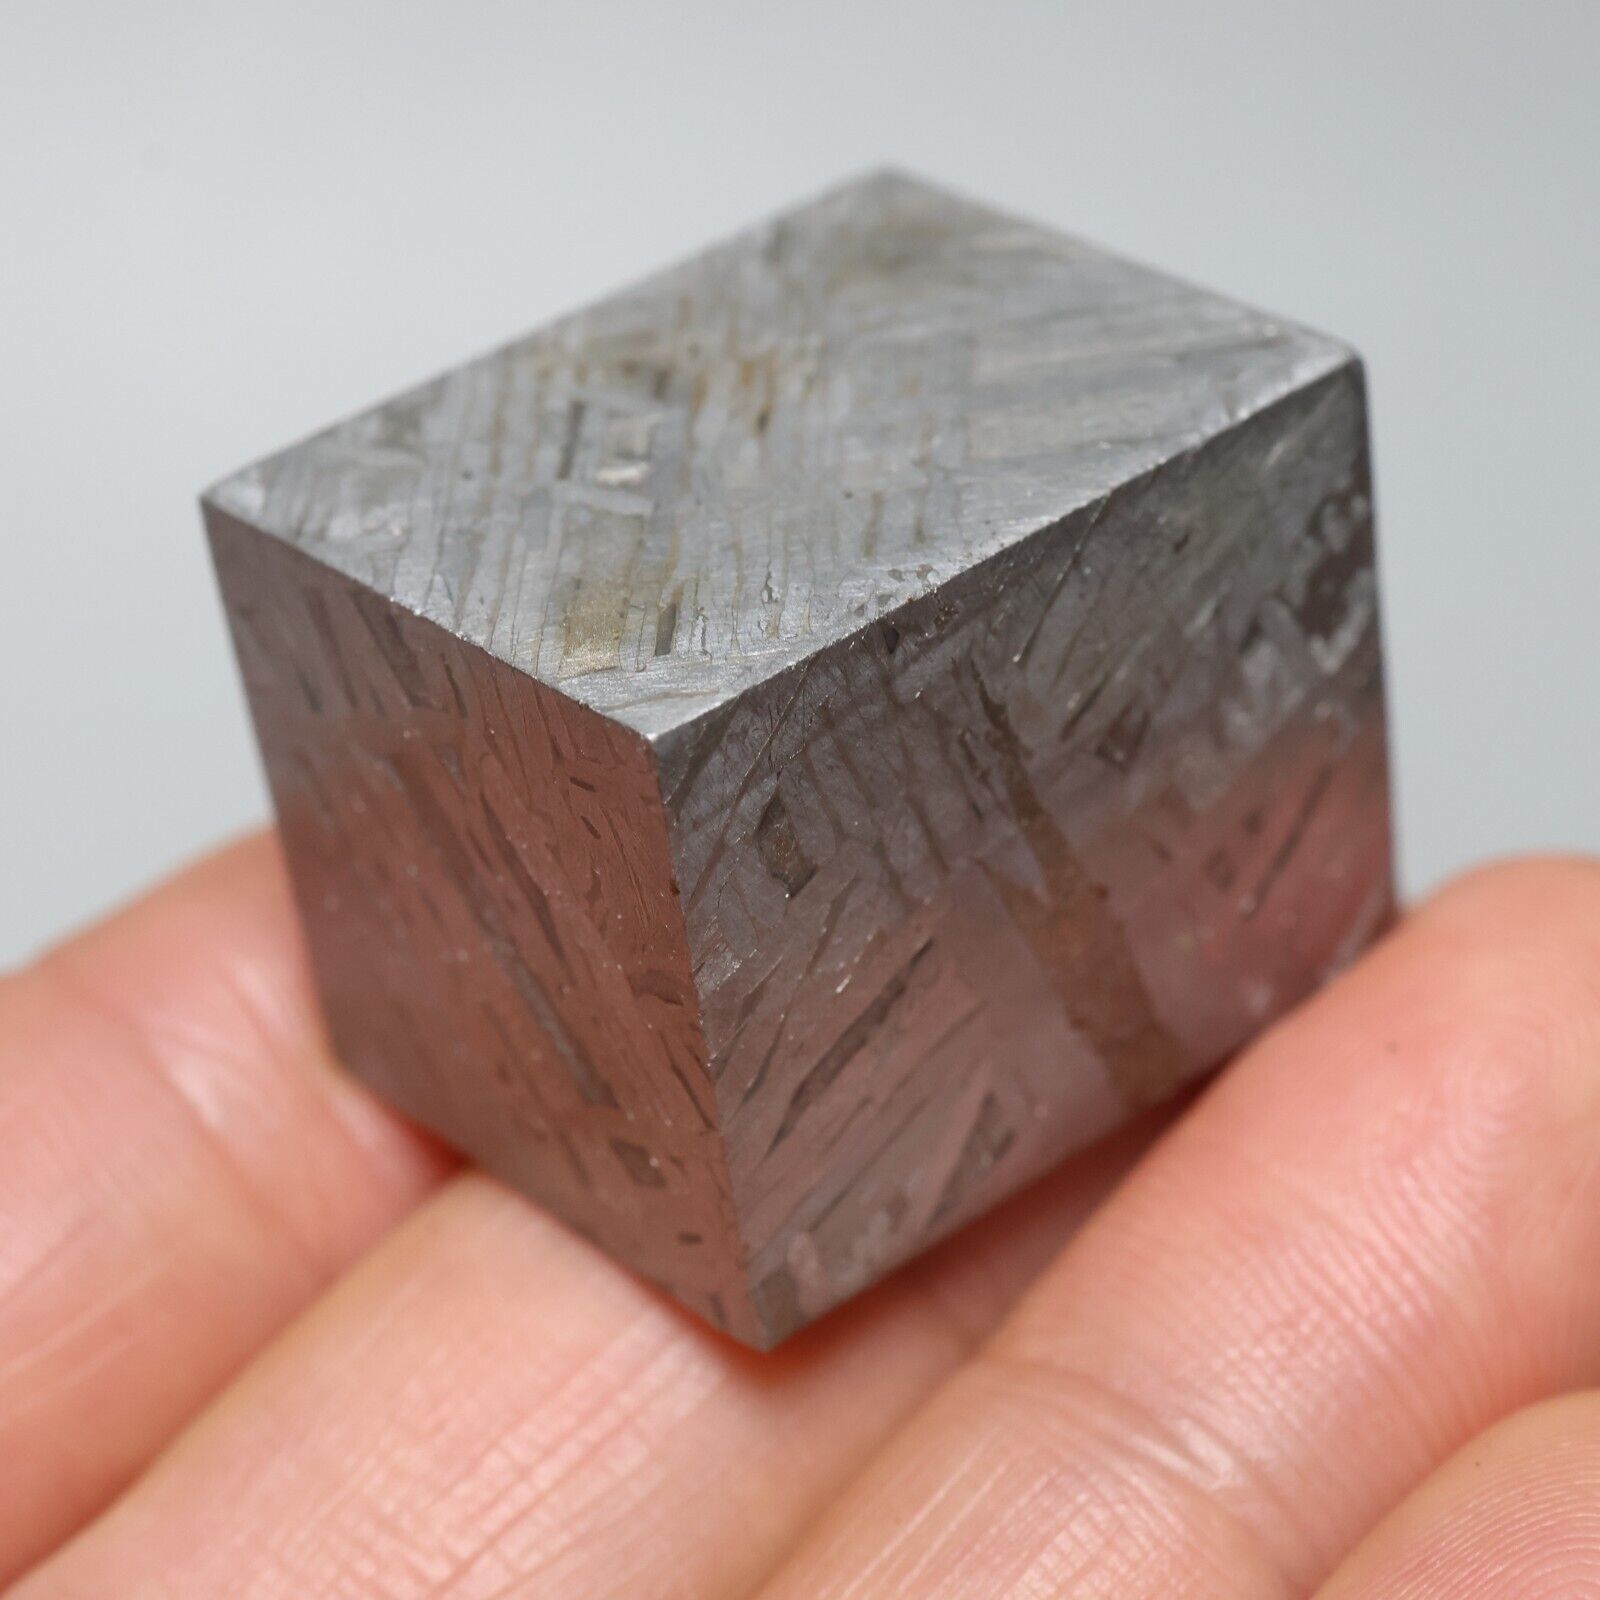 82g Iron meteorite, Muonionalusta iron meteorite cube, Natural Meteorite J179